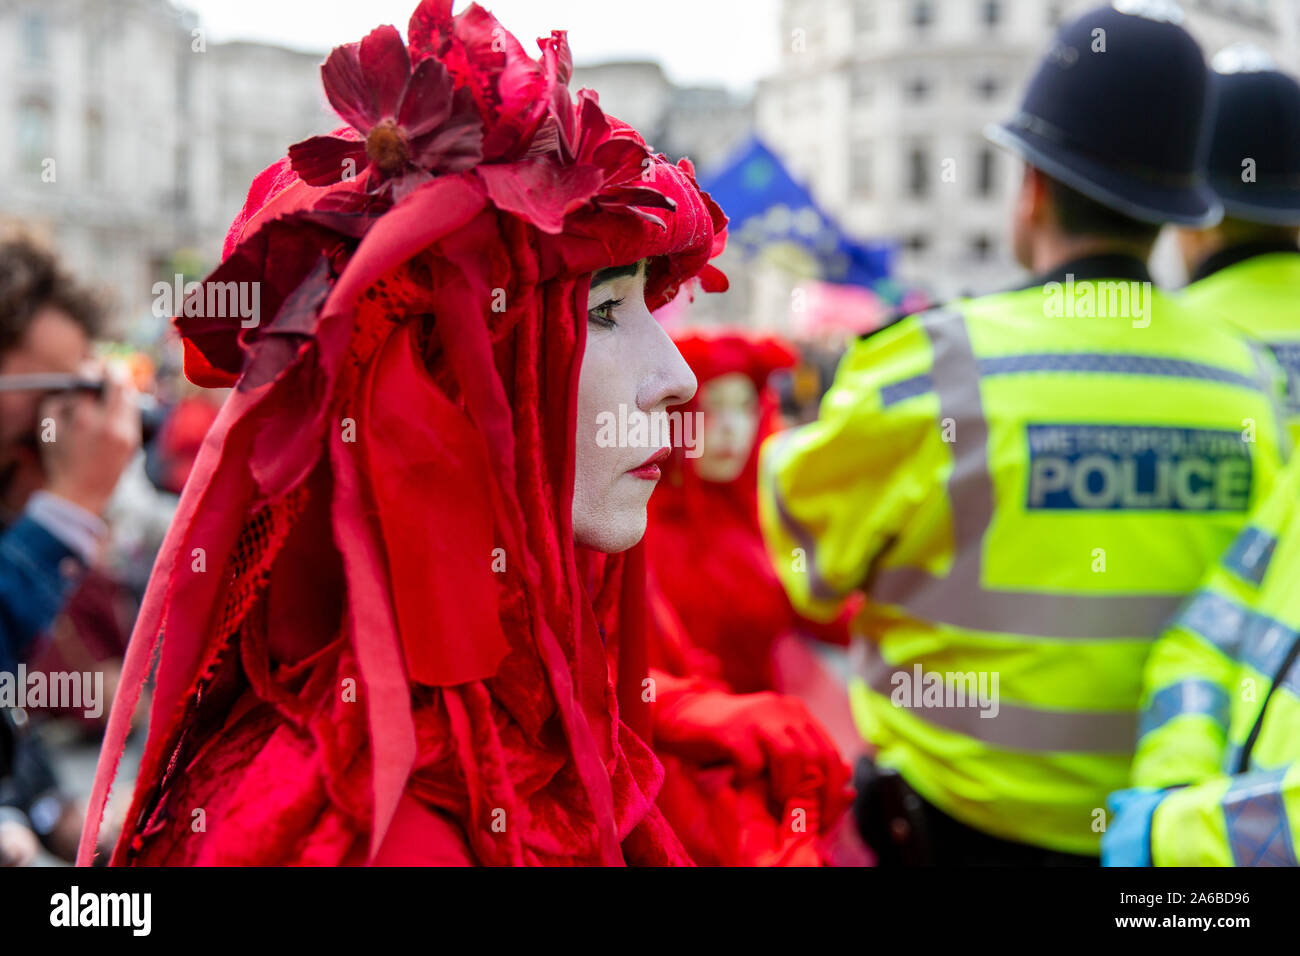 Londres, 10 octobre 2019, l'extinction en costumes rouge groupe rébellion police surround préparation de l'arrestation qui acivists ont enfermés pour une structure en bois dans la route à côté de Trafalgar Square. Banque D'Images